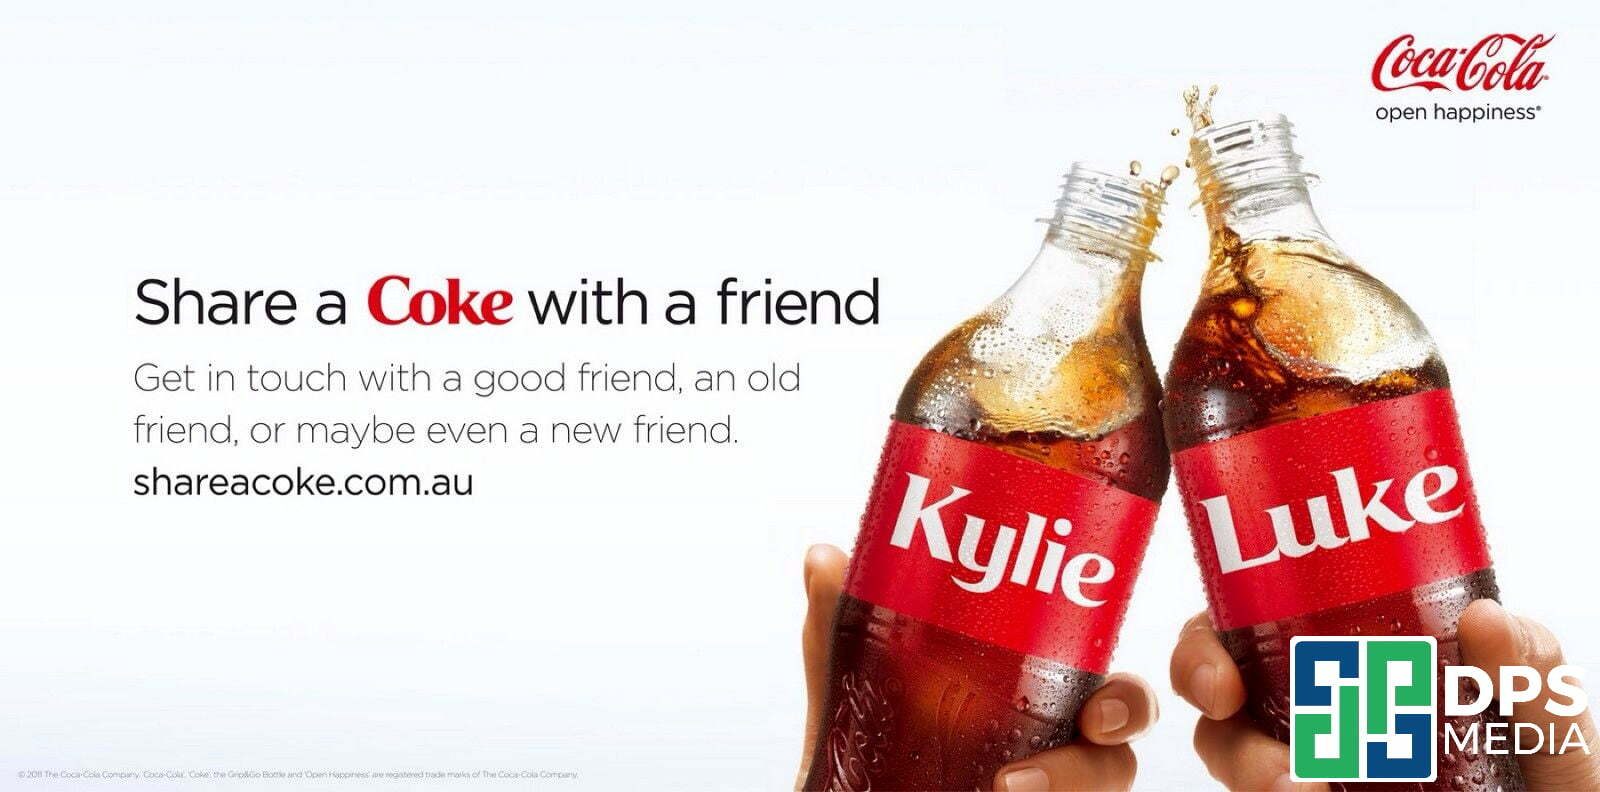 Hình ảnh chương trình marketing chúc mừng của Cocacola vào ngày lễ tạ ơn 